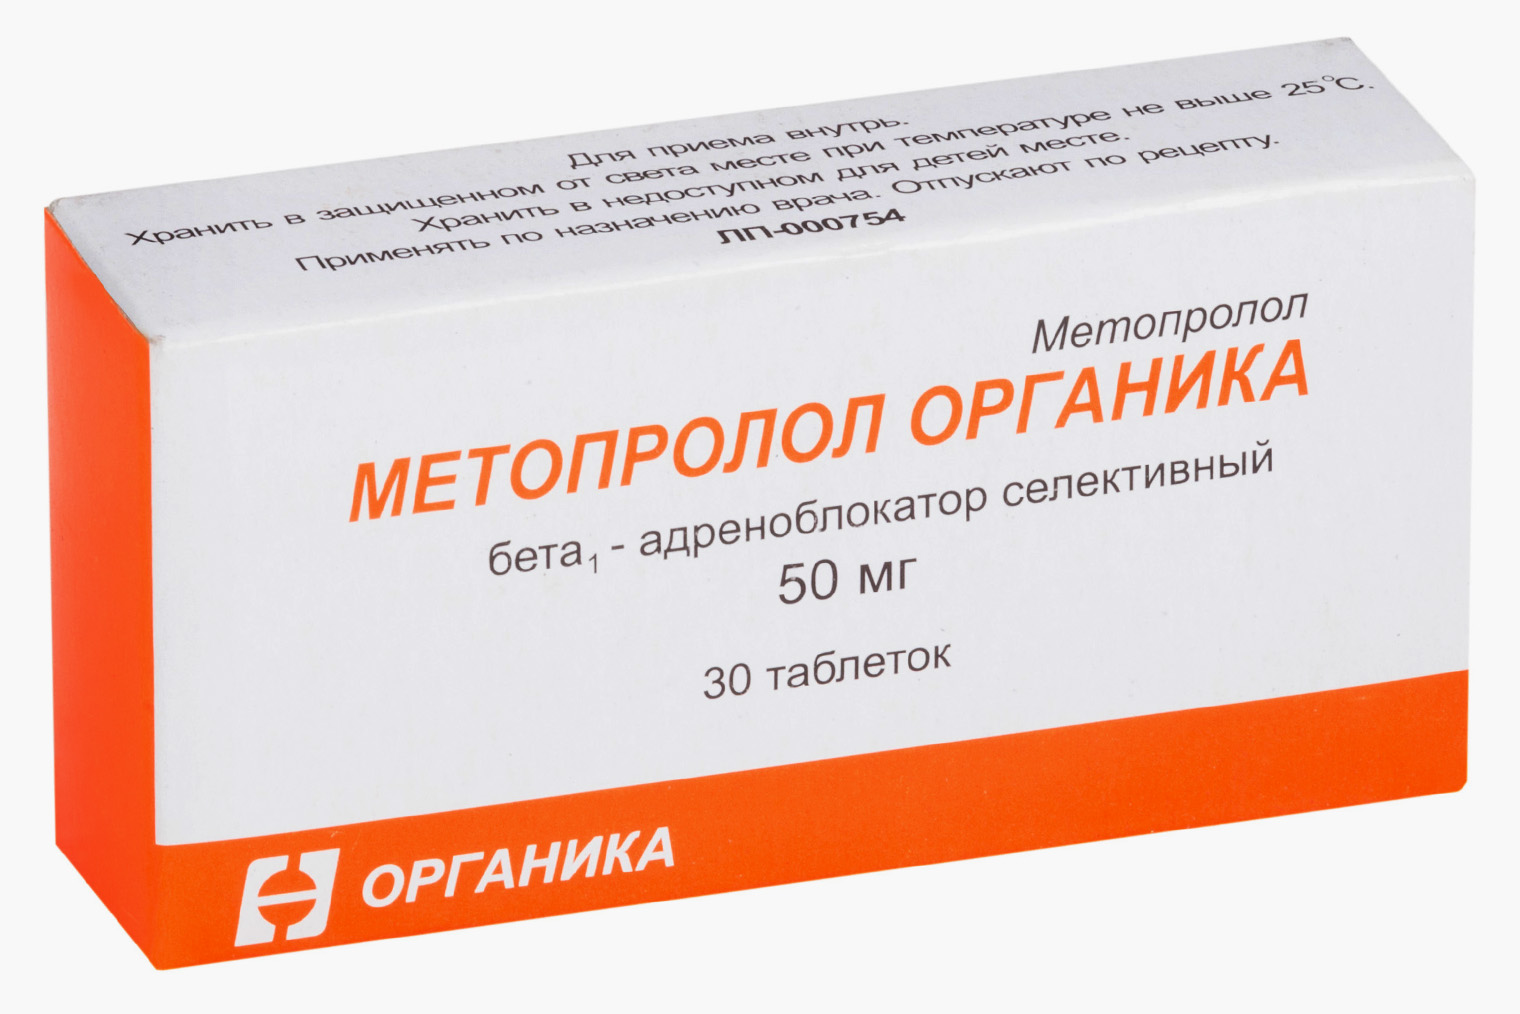 Стоимость 30 таблеток метопролола в дозировке 50 мг начинается от 32 ₽